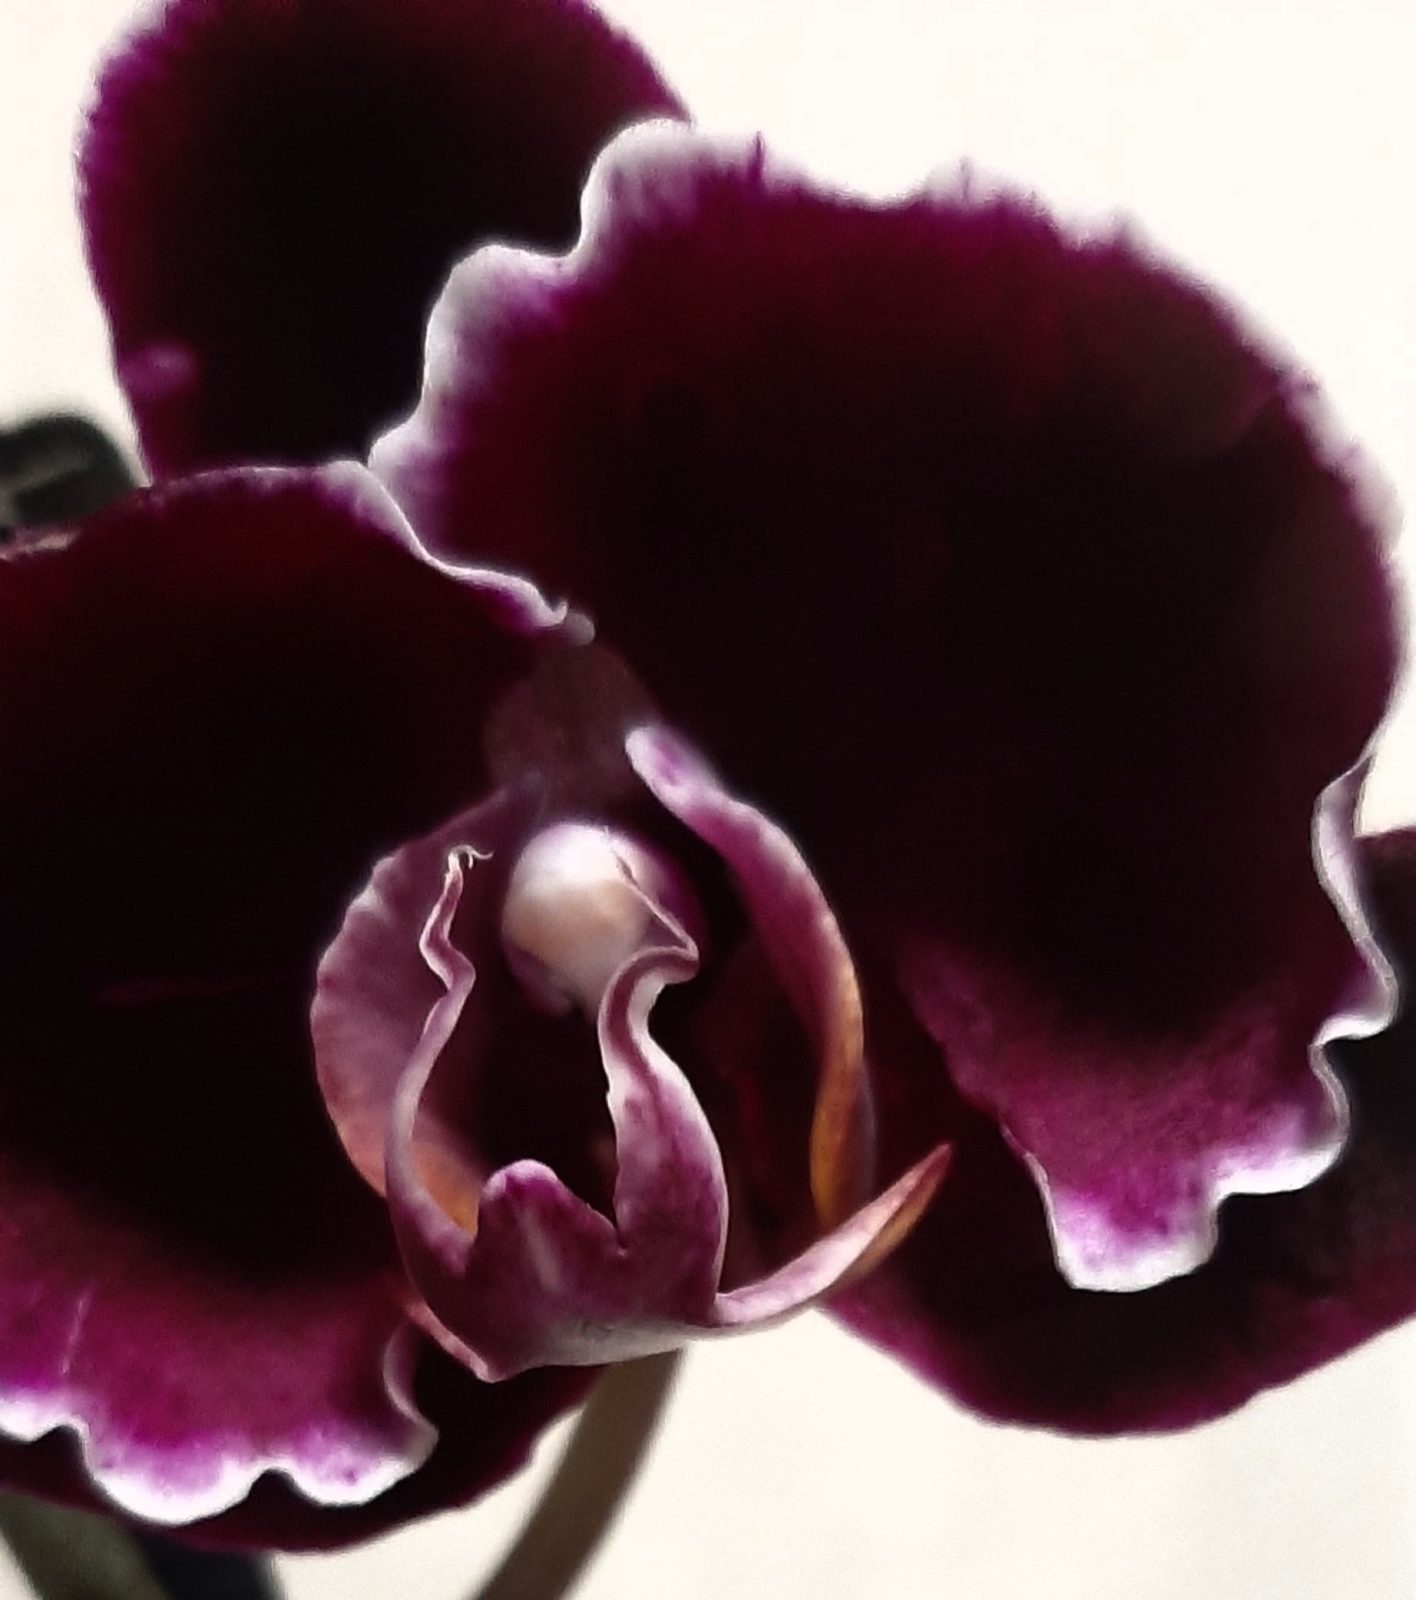 орхидея шоколад фото и описание сорта